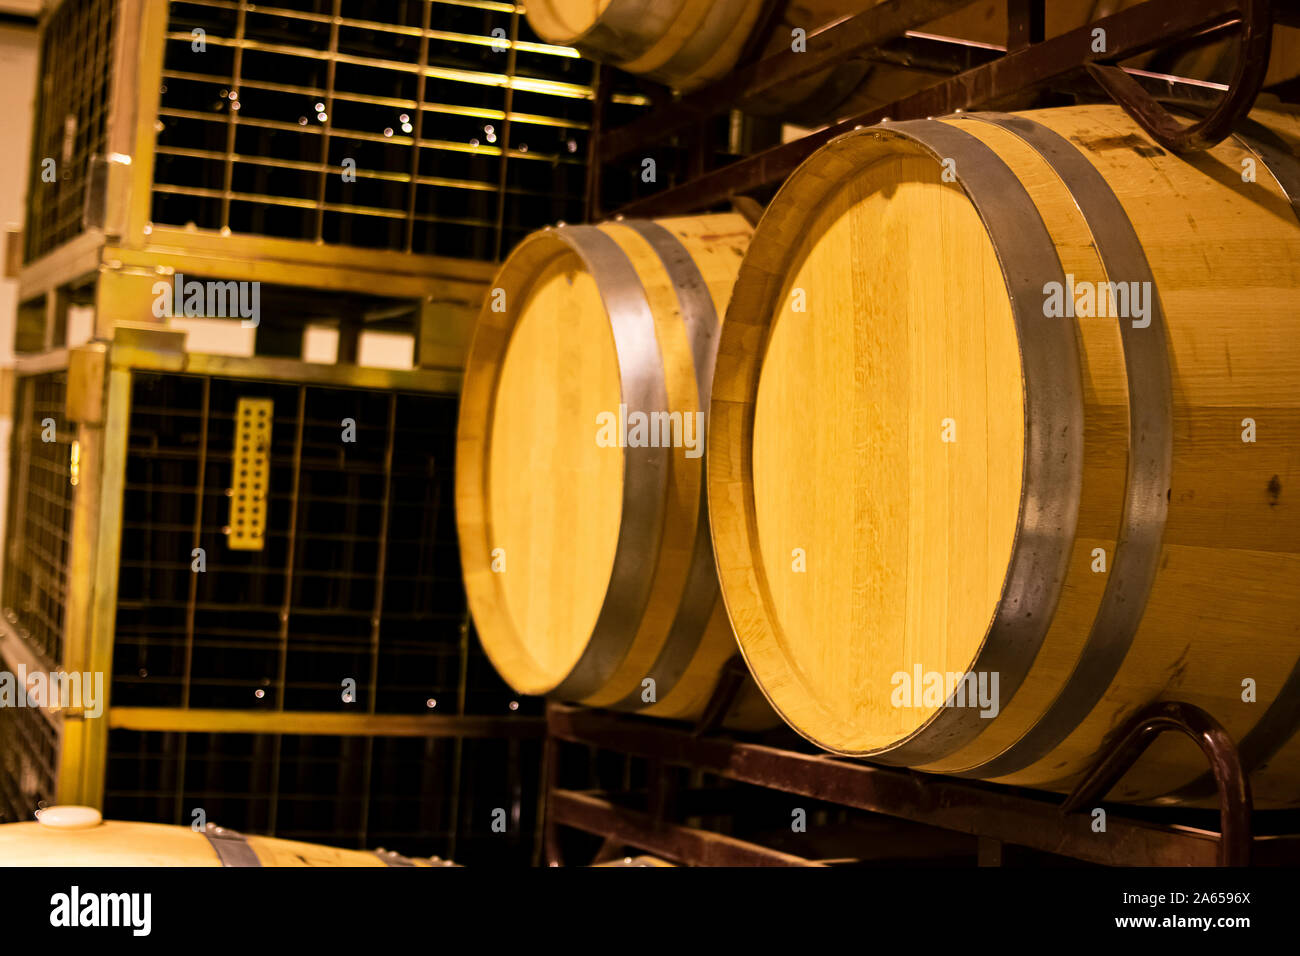 Barriques de chêne américain pour le vieillissement et le vieillissement du vin dans une cave empilés sur des étagères métalliques Banque D'Images